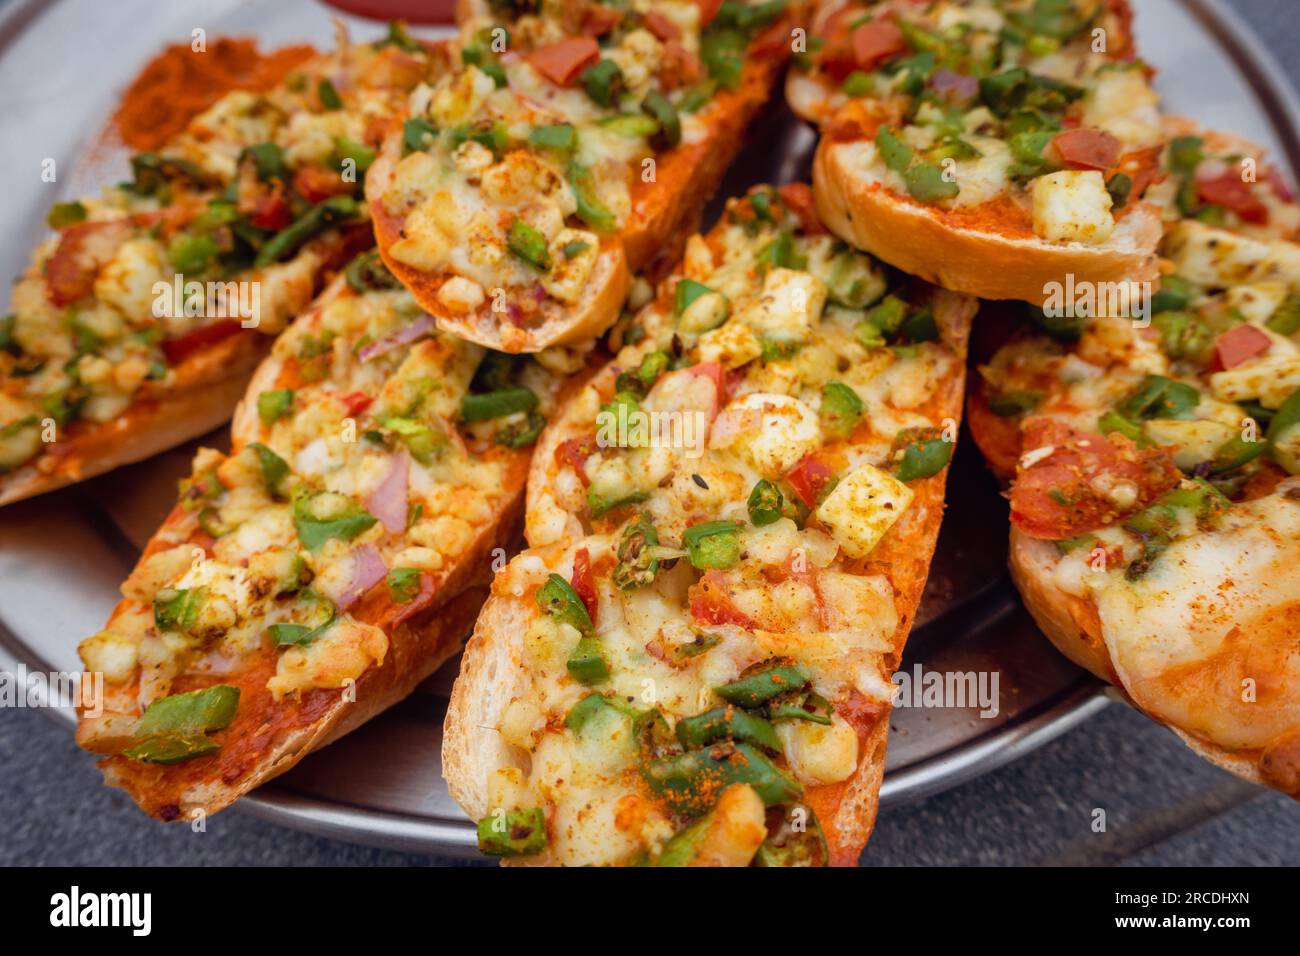 Pane all'aglio allo zenzero fatto in casa con formaggio e condimenti alle erbe indiane. India Foto Stock